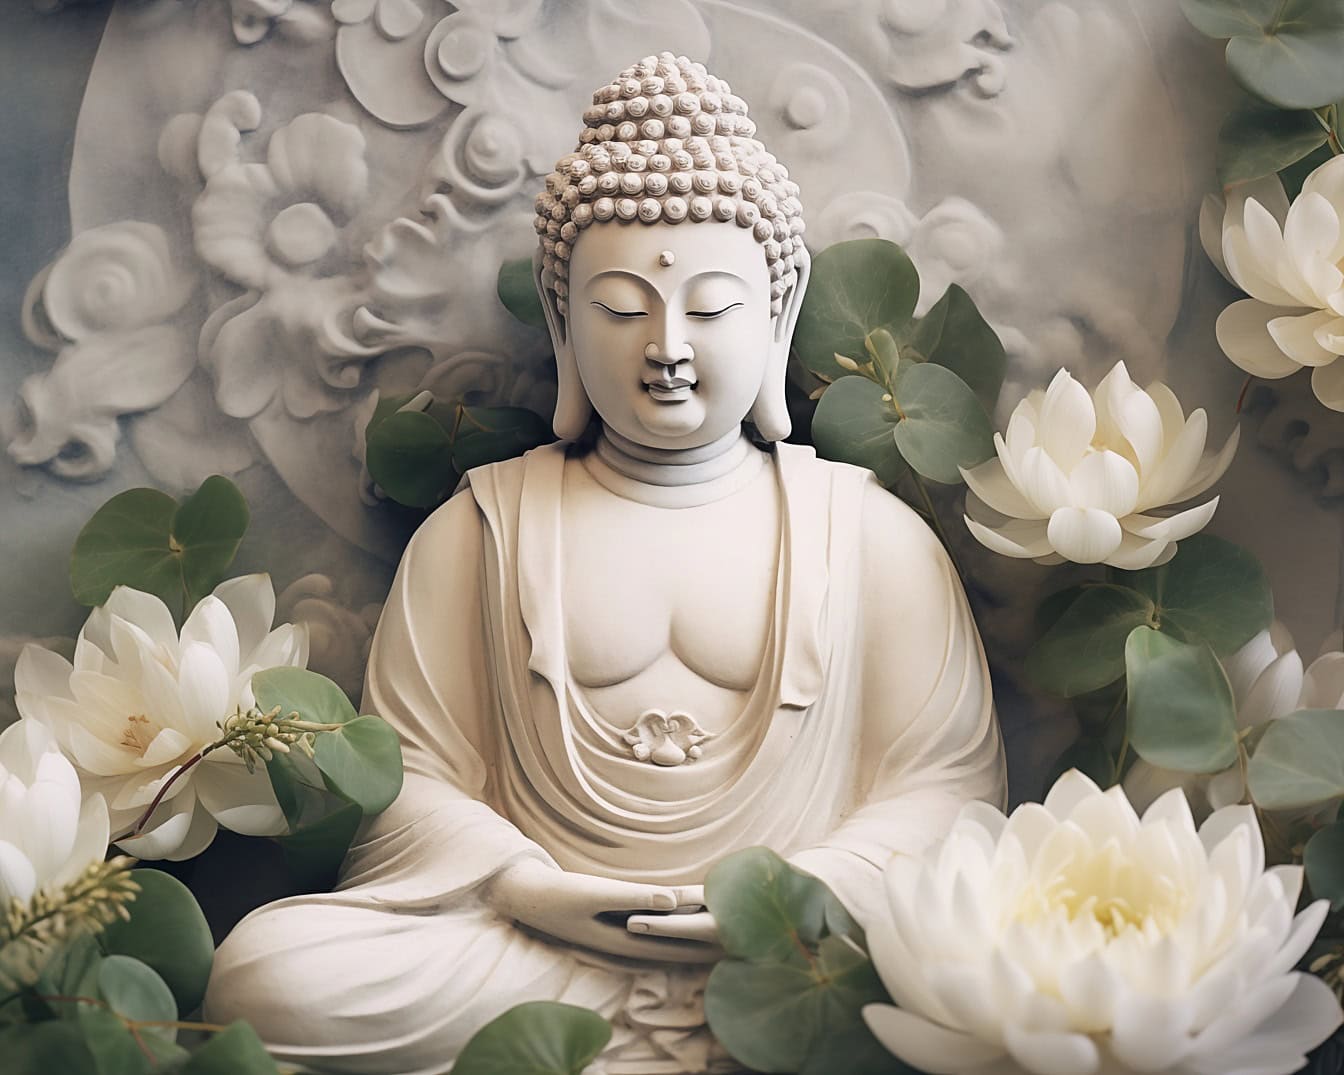 Socha Budhu v transcendentálnej meditácii obklopená lotosovými kvetmi zobrazujúca zen ako duchovnú filozofiu